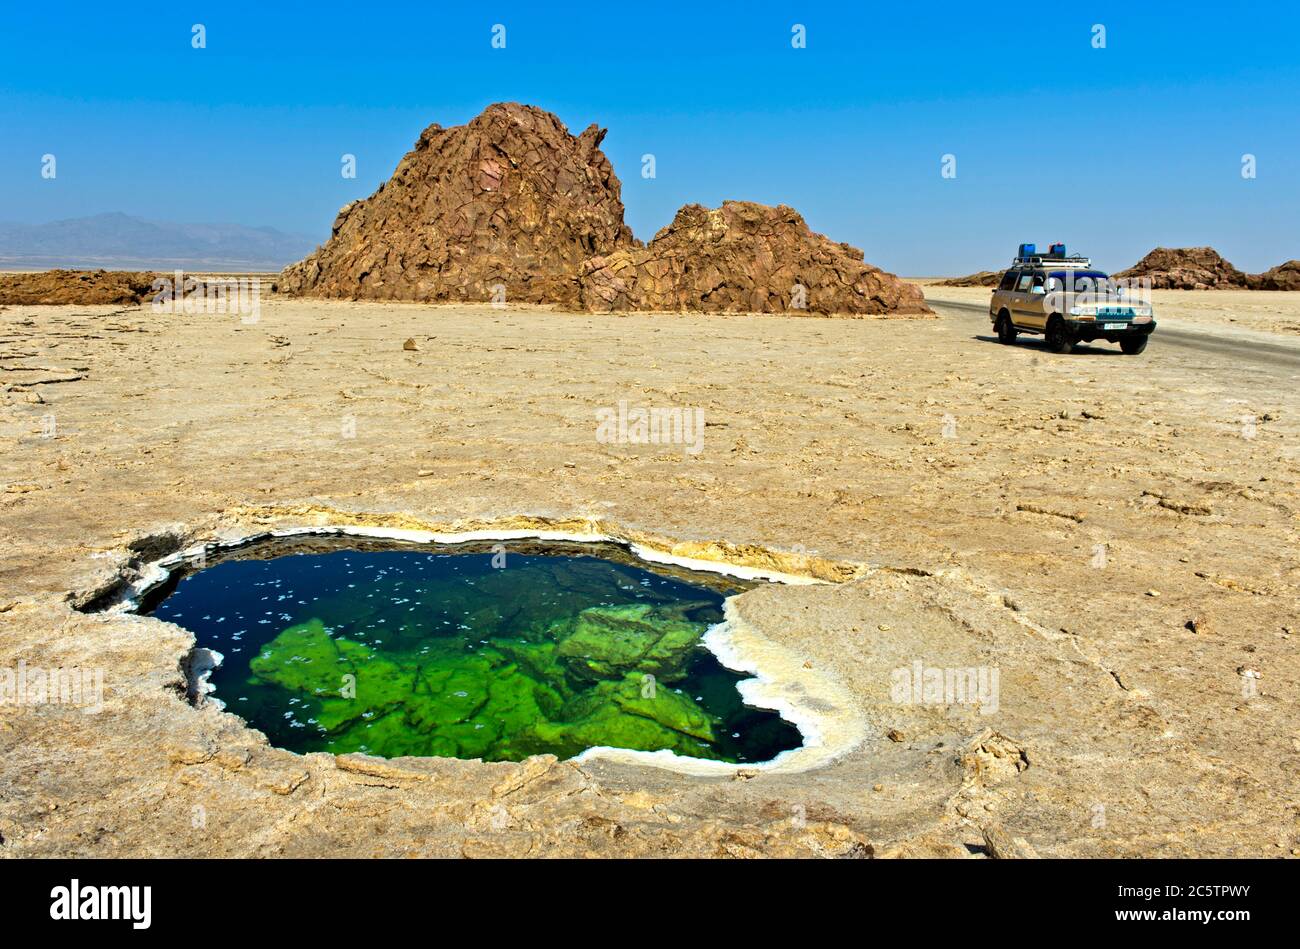 Trou d'eau avec cristaux de sel floqués dans la croûte de sel du lac Assale ou du lac Karum, zone géothermique de Dallol, dépression de Danakil Éthiopie Banque D'Images